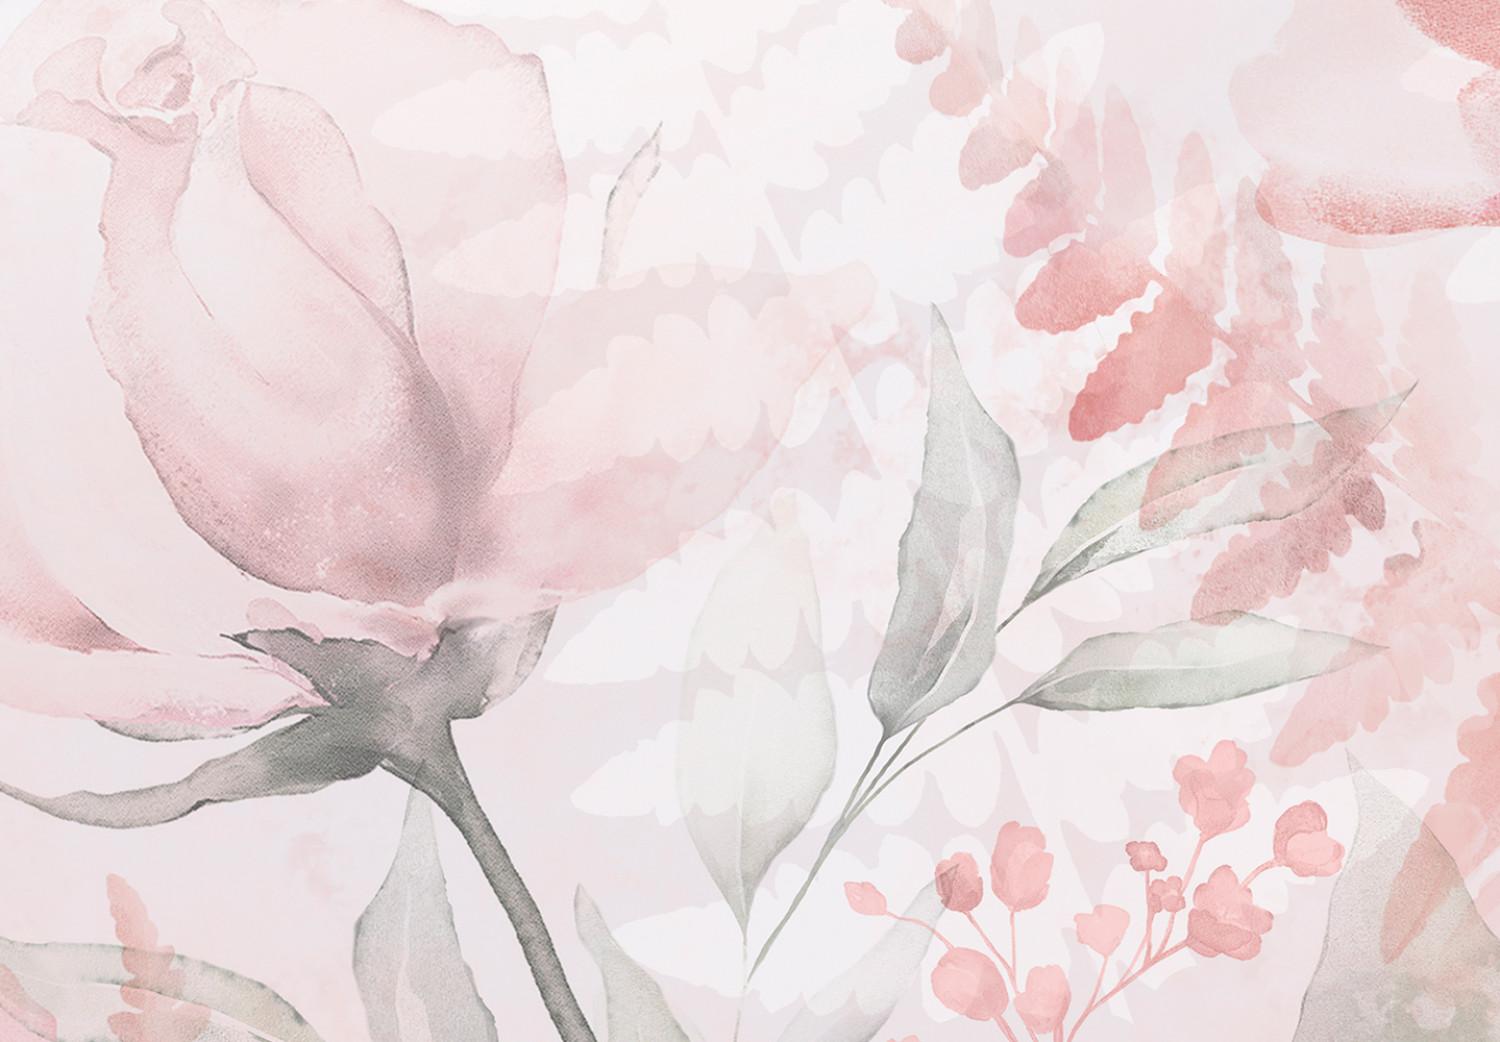 Cuadro moderno Amor (1 parte) - palabra "amor" en fondo rosa con flores y hojas